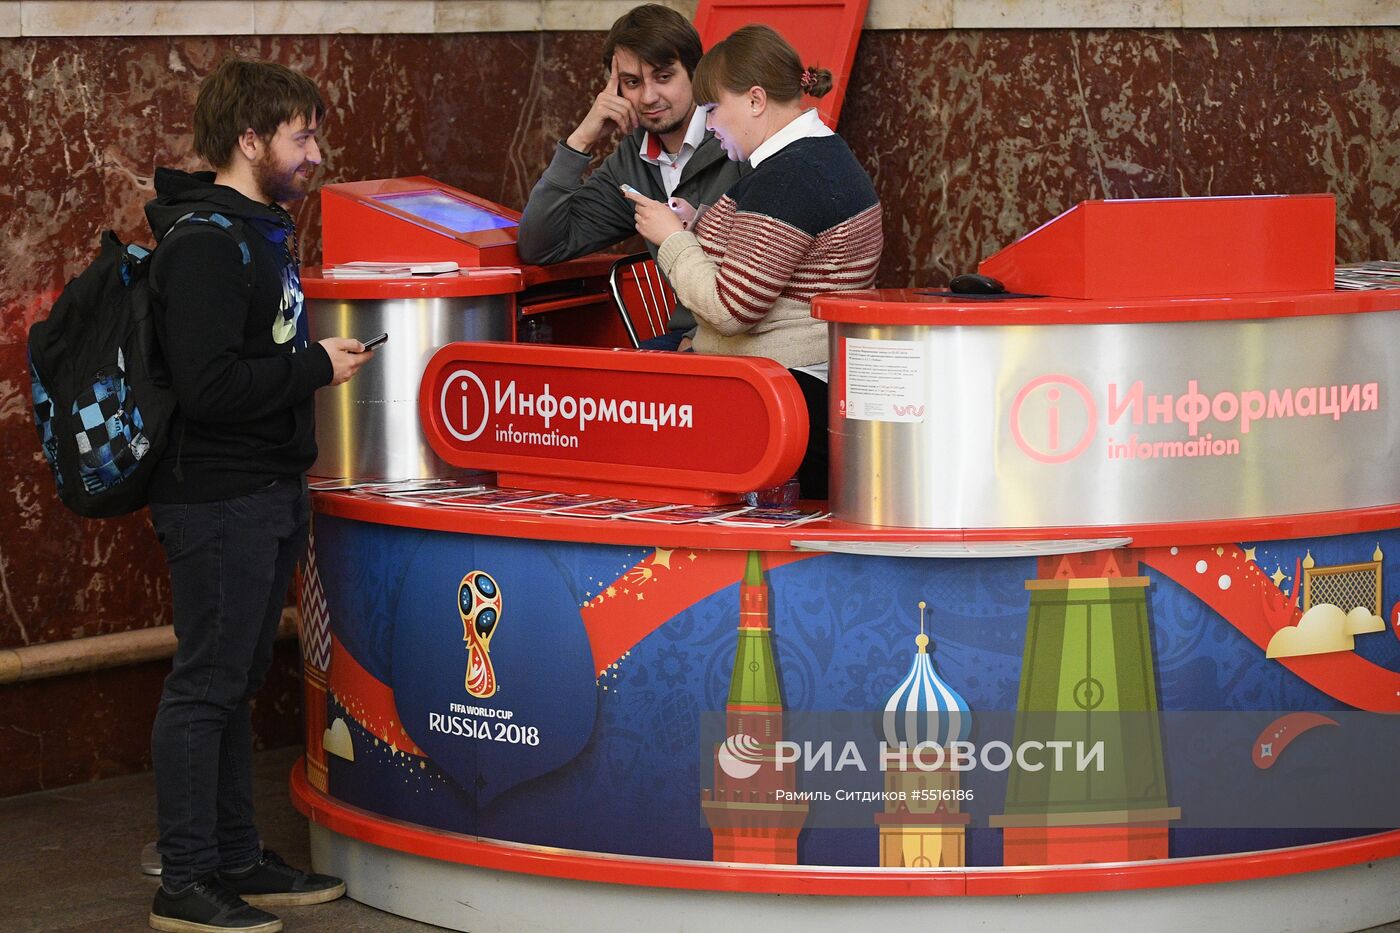 Турникеты для бесплатного прохода болельщиков ЧМ-2018 установили в Московском метрополитене